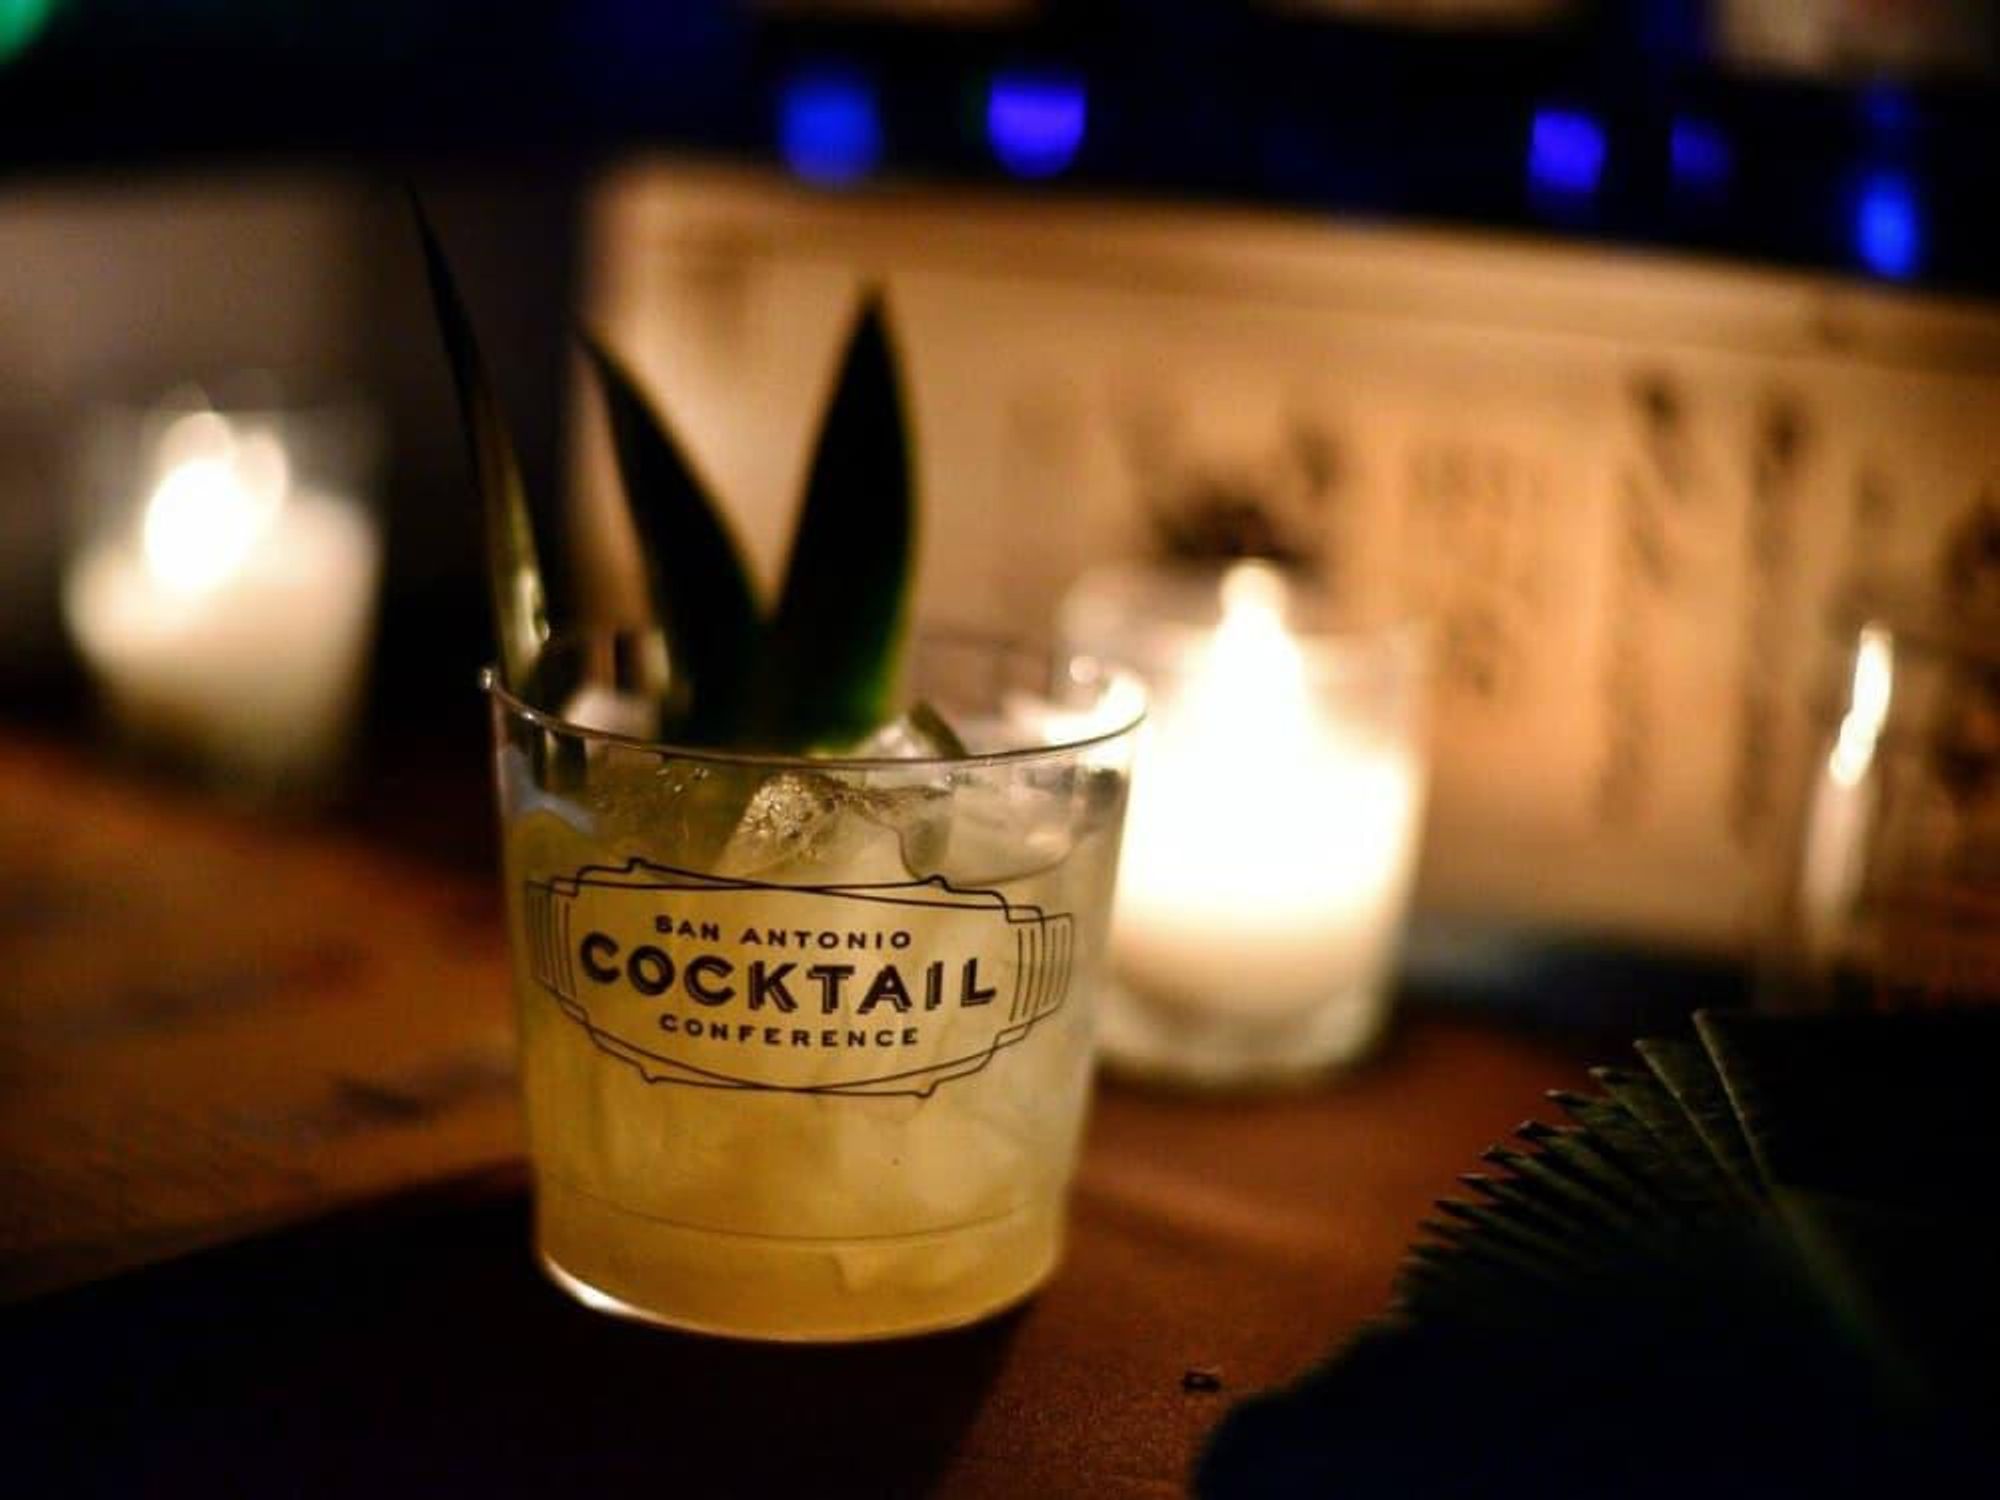 San Antonio Cocktail Conference drink cup label 2015